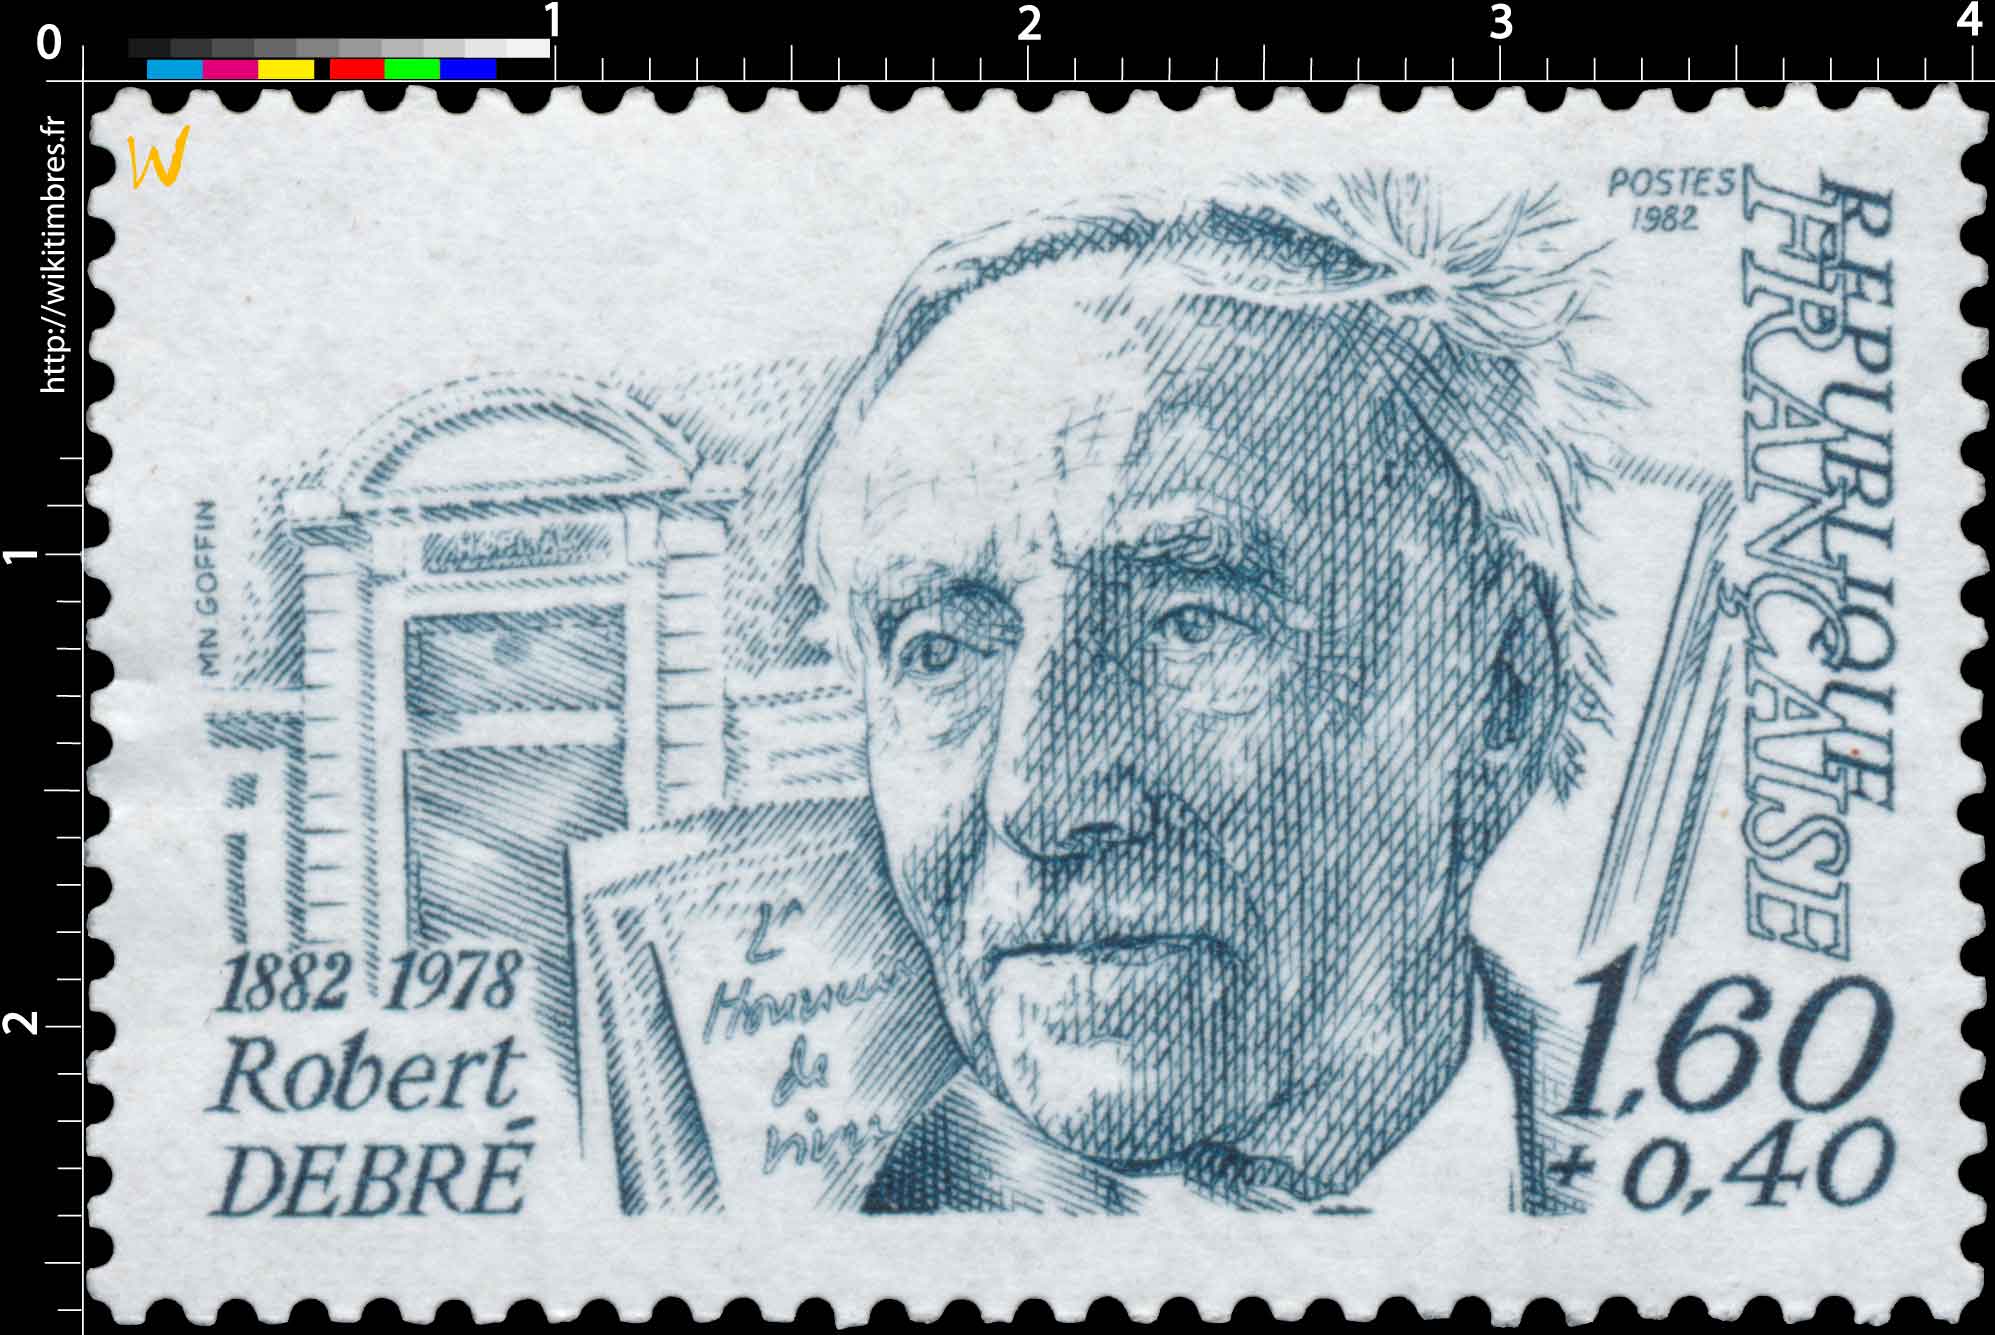 1982 Robert DEBRÉ 1882-1978